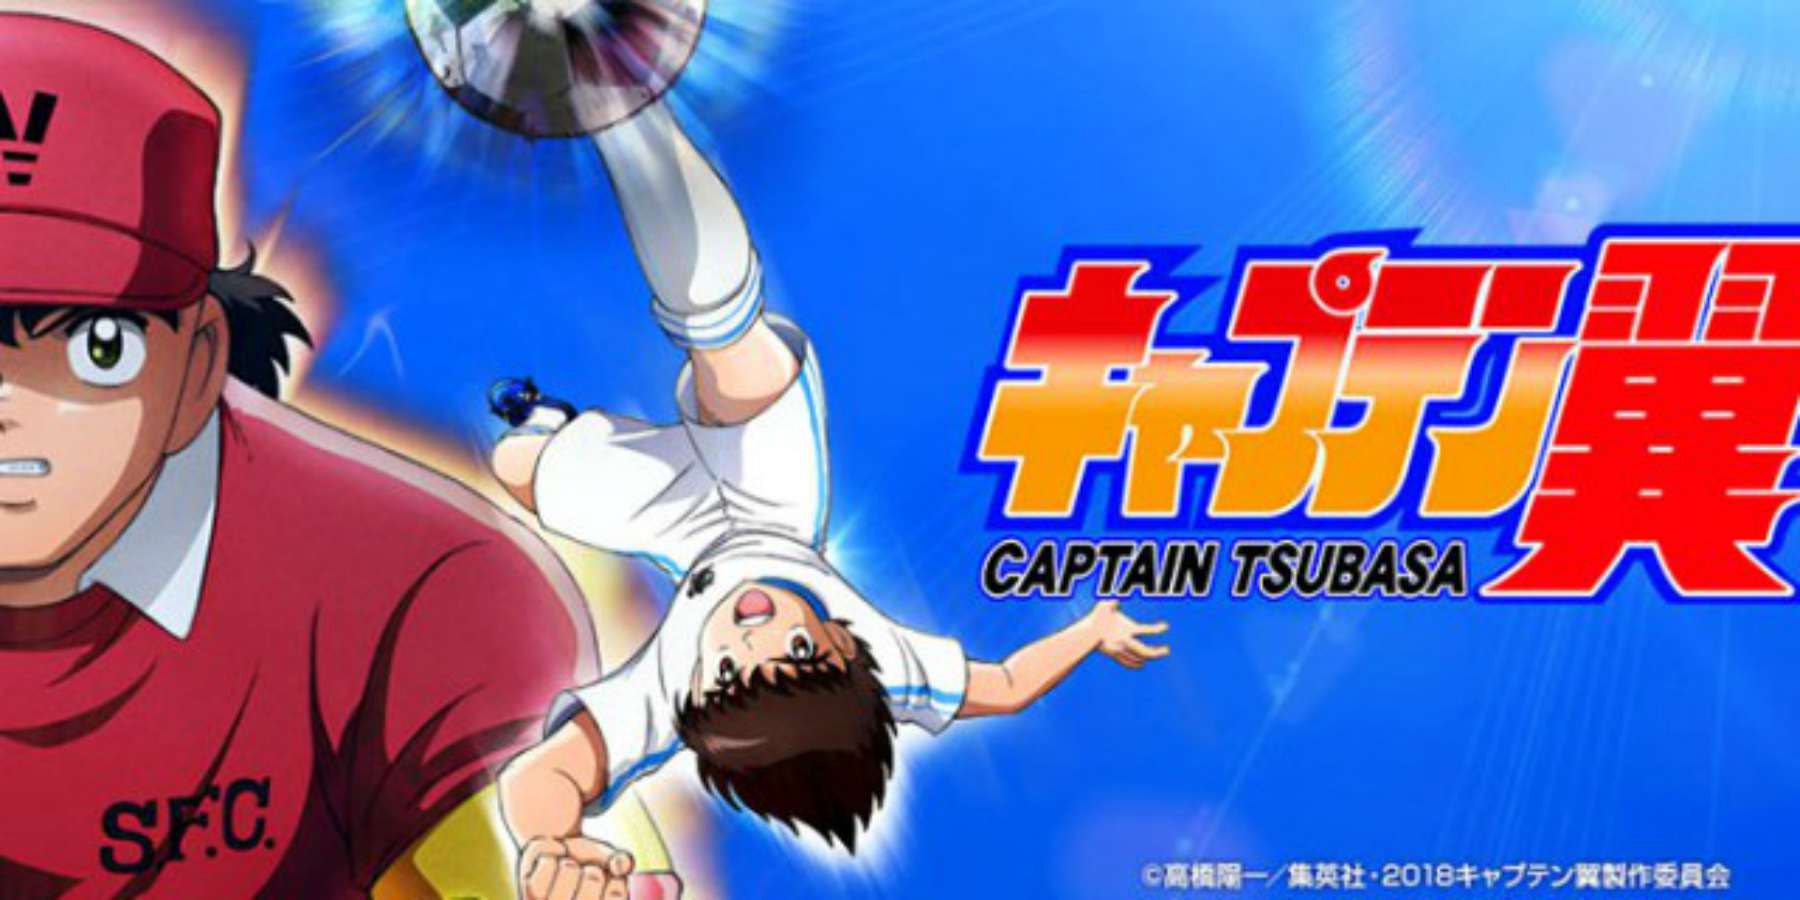 Revelan título del opening del nuevo anime de Capitan Tsubasa